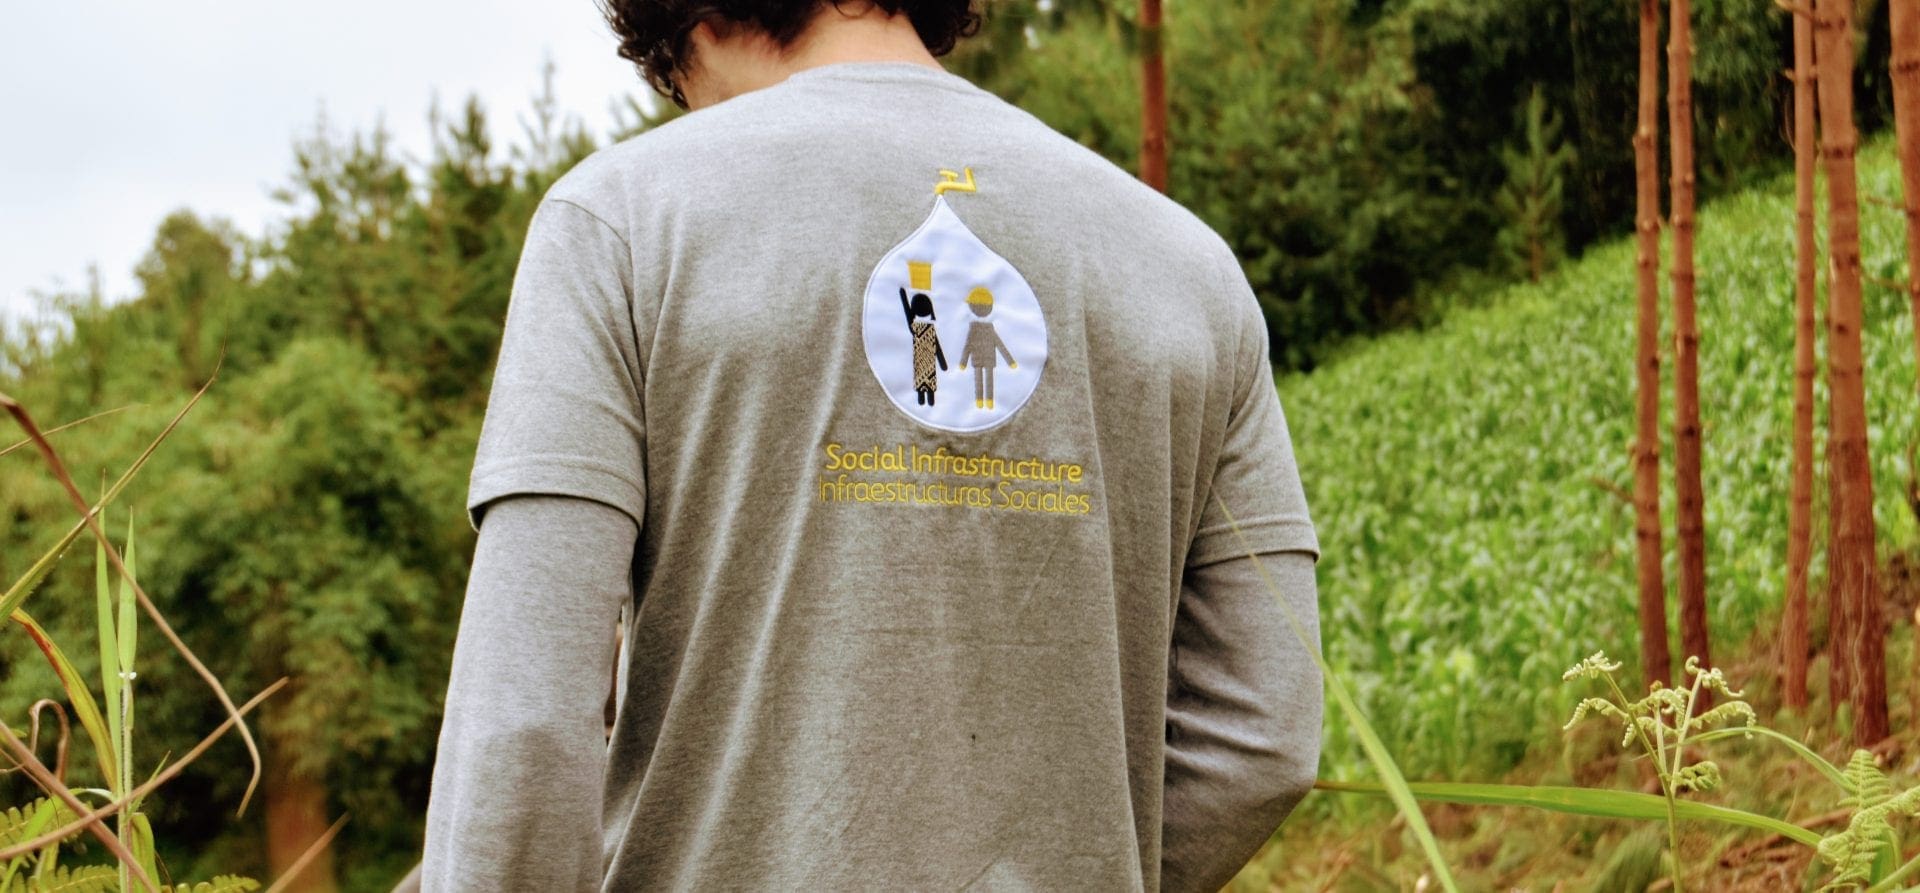 Imagen de un chico de espaldas con una camiseta de Infraestructuras Sociales de Ferrovial